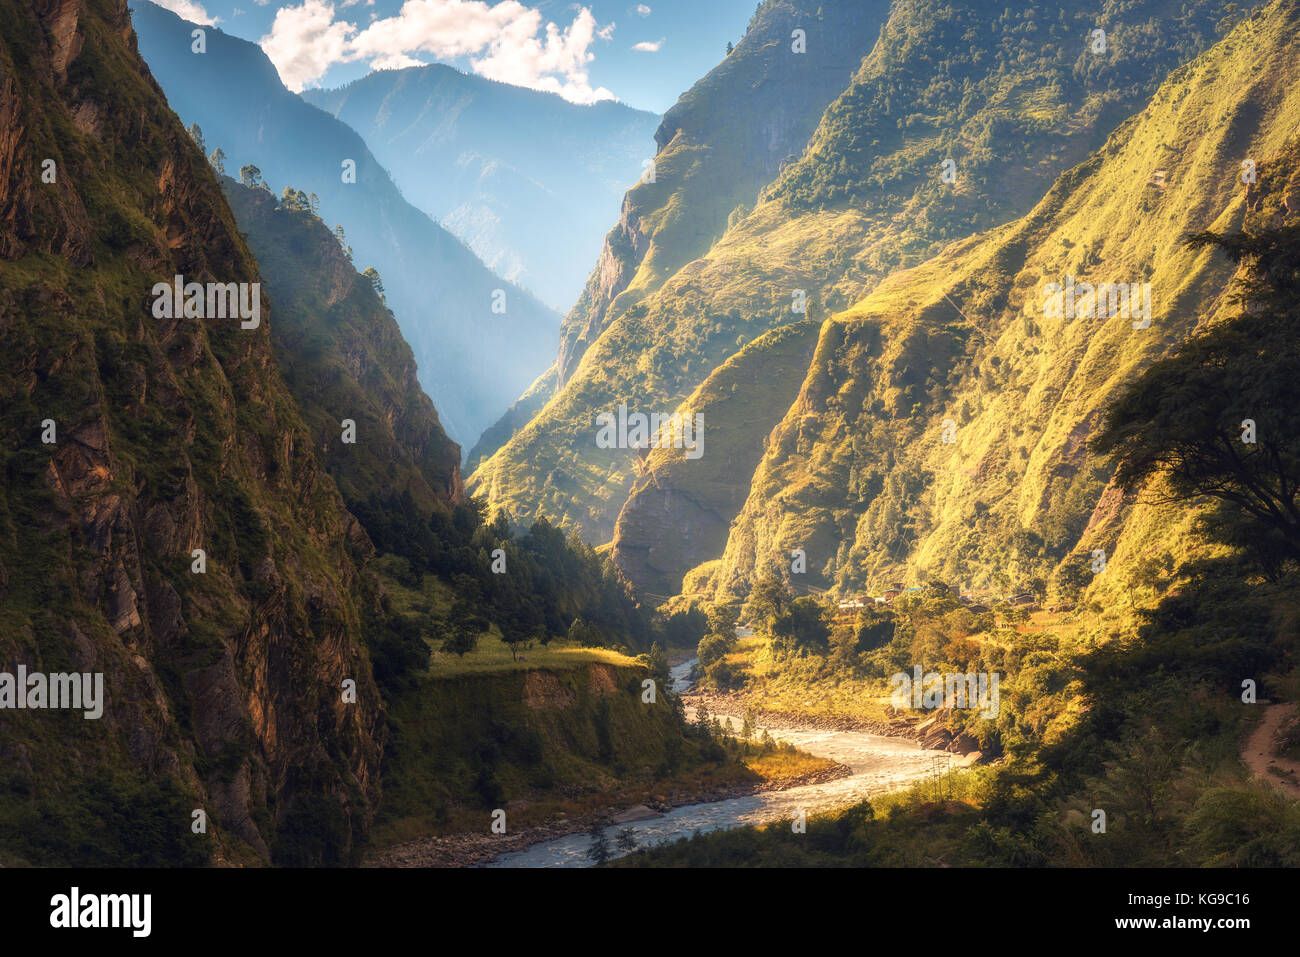 Un paesaggio fantastico con alta montagna himalayana, bellissimo fiume di curvatura, foresta verde, cielo blu con nuvole e sole giallo in autunno in Nepal. m Foto Stock